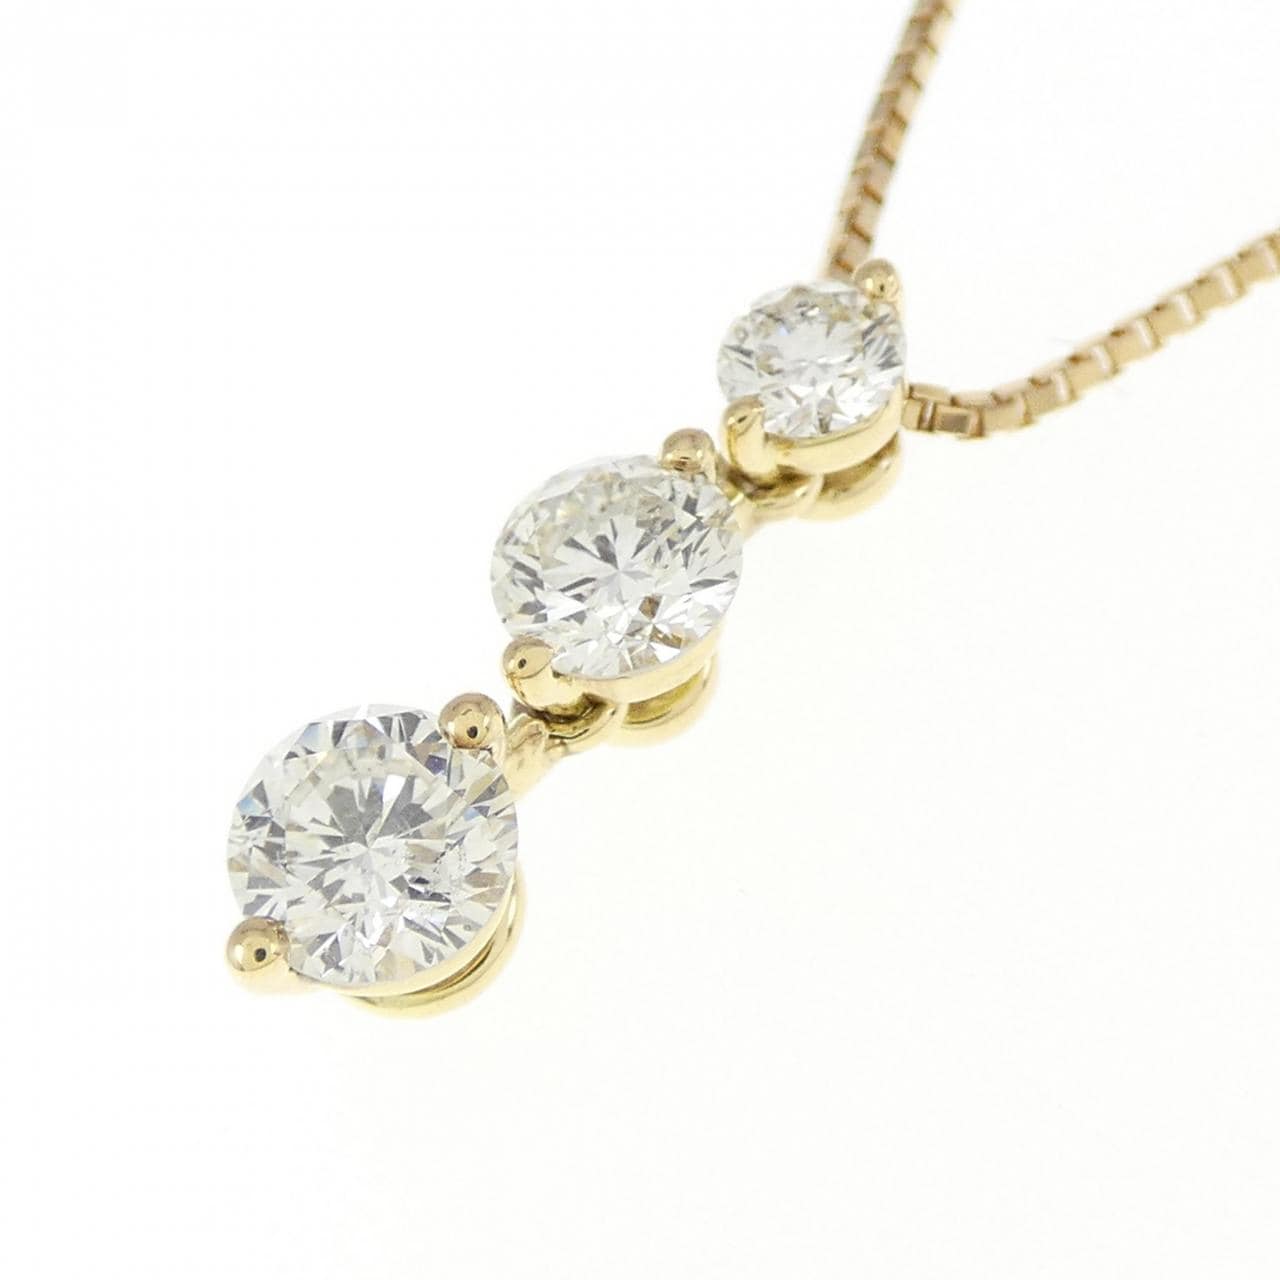 K18YG Three Stone Diamond Necklace 0.60CT